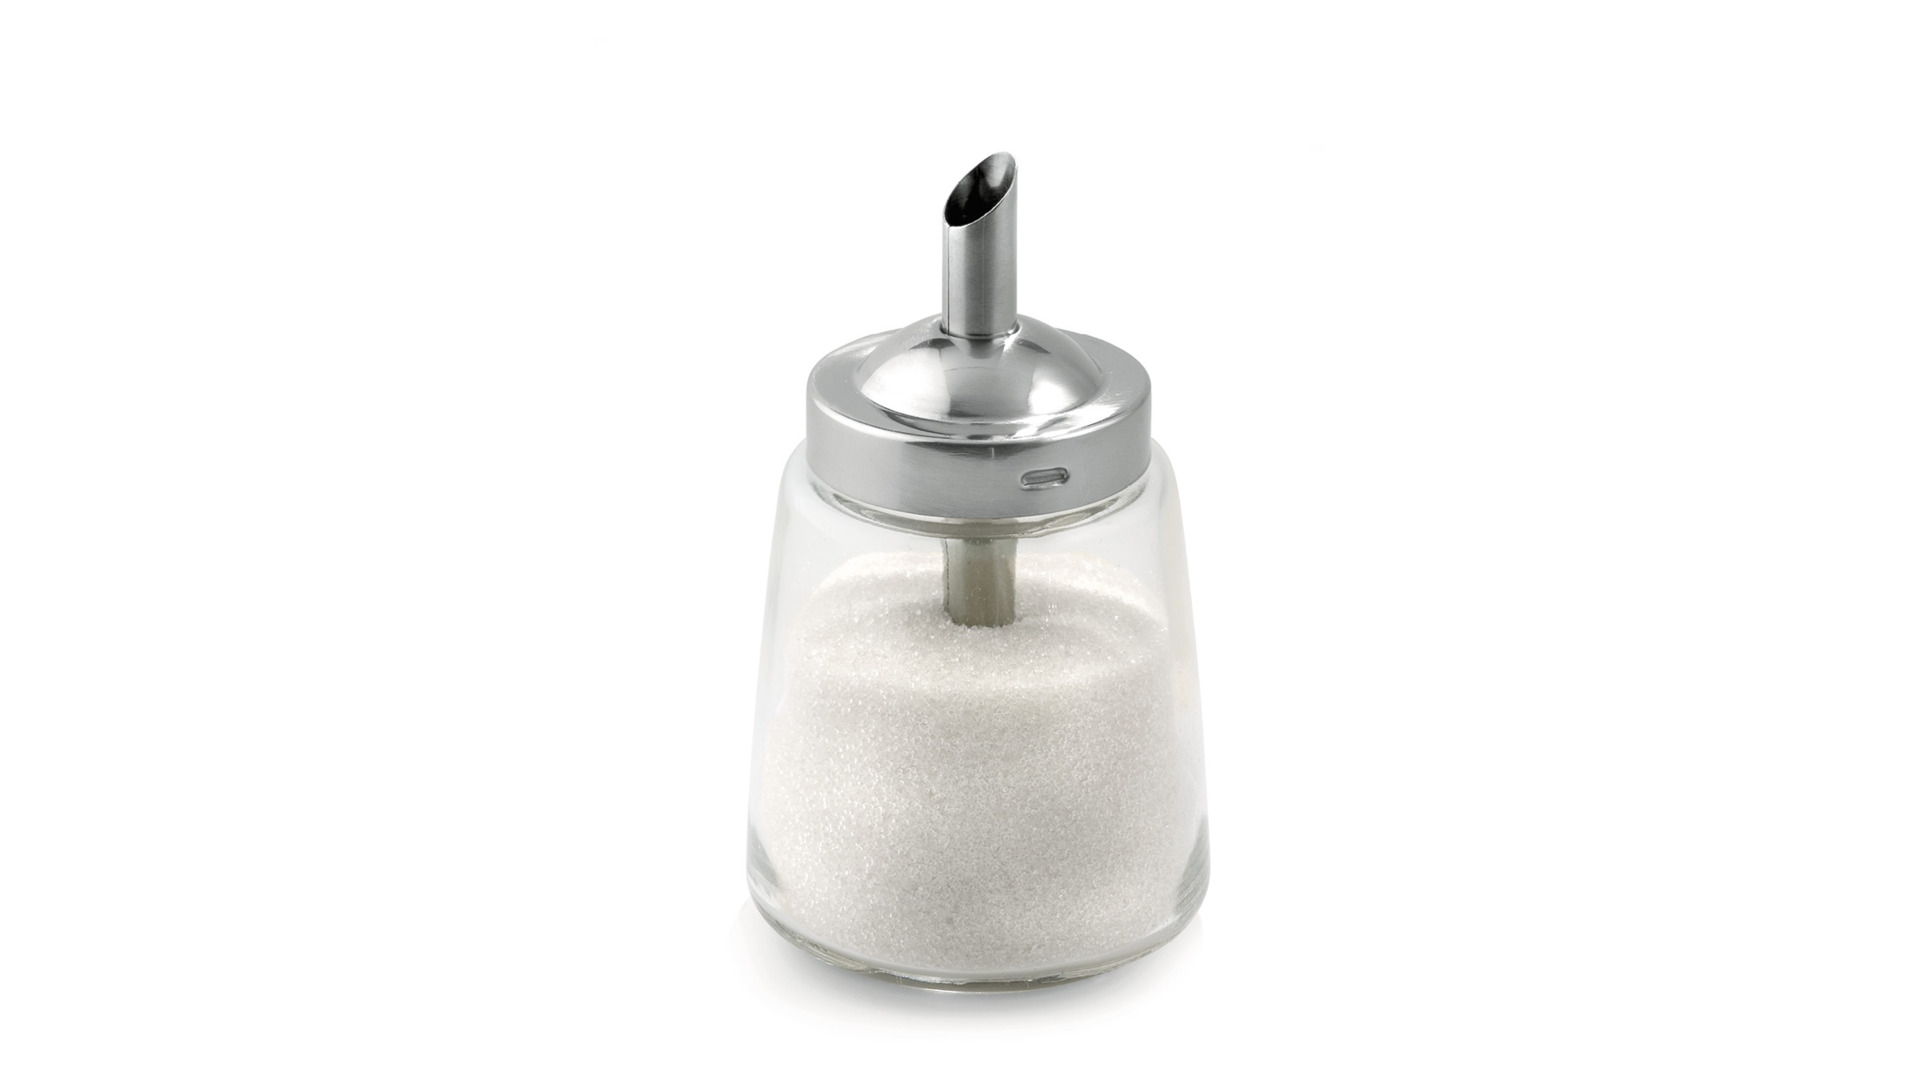 Сахарница с дозатором Weis 20 0мл, d7хh13 см, стекло, сталь нержавеющая, п/к